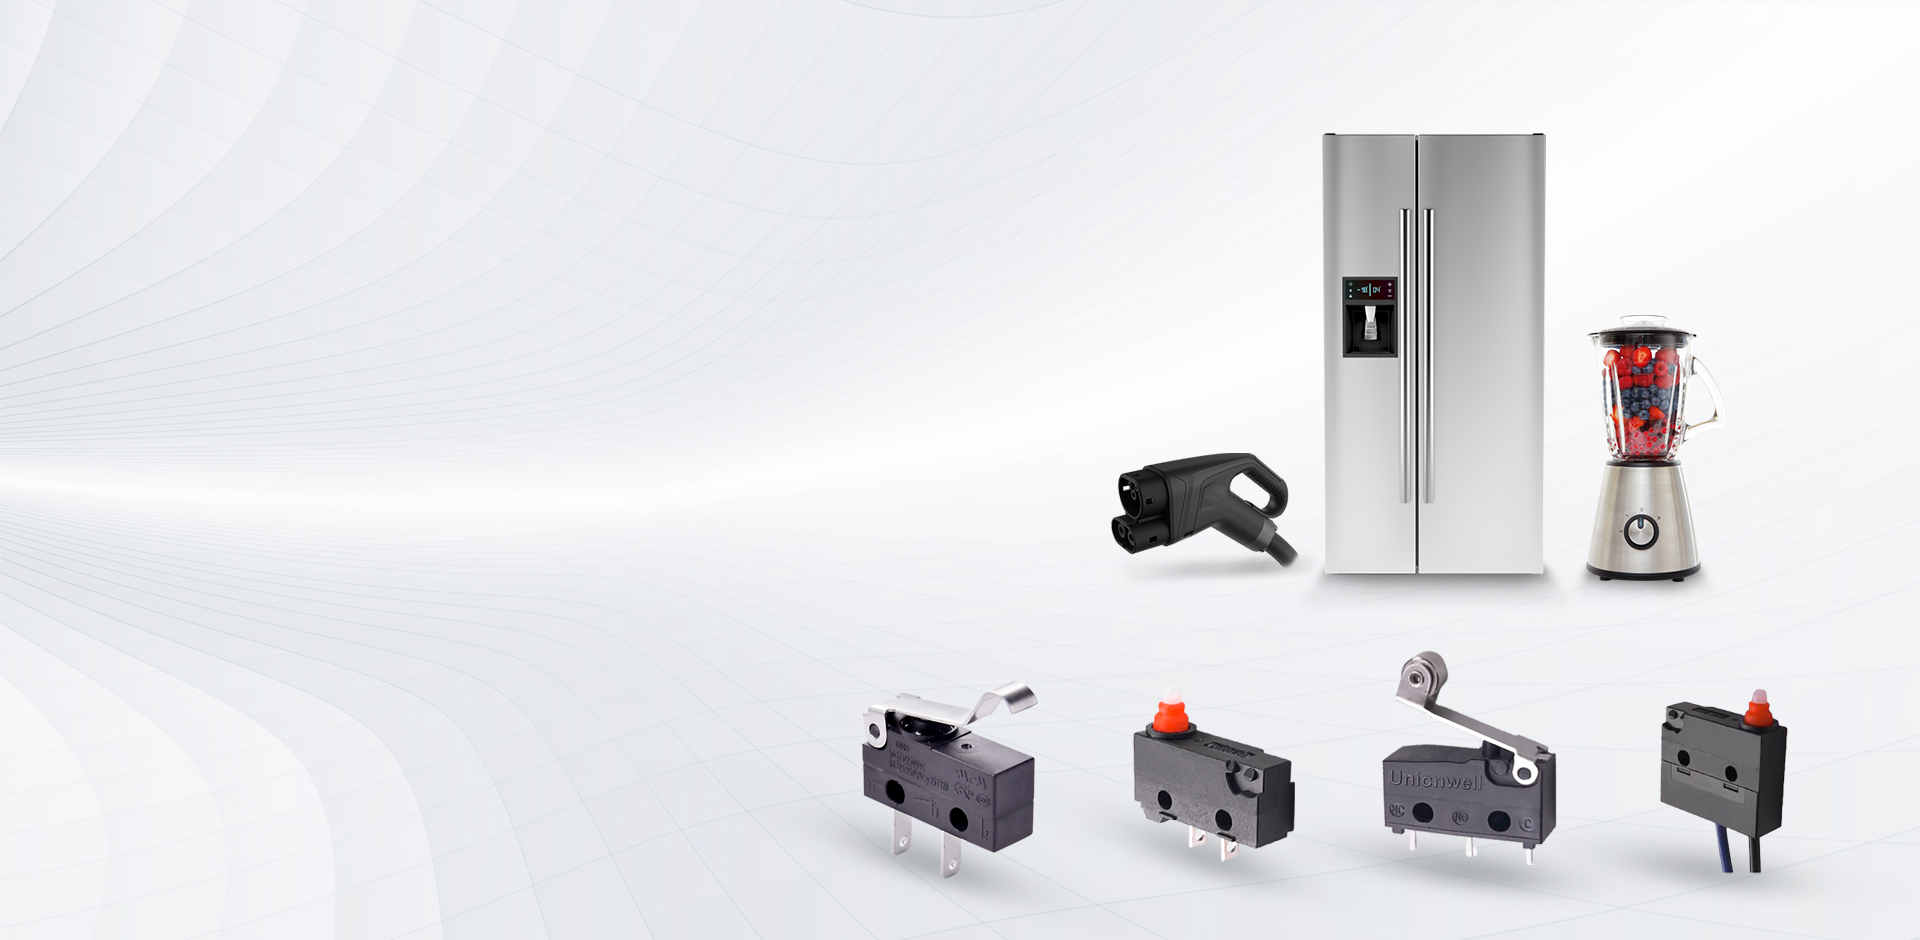 Micro interruptores multifuncionales para uso en electrodomésticos, vehículos eléctricos y dispositivos de carga.